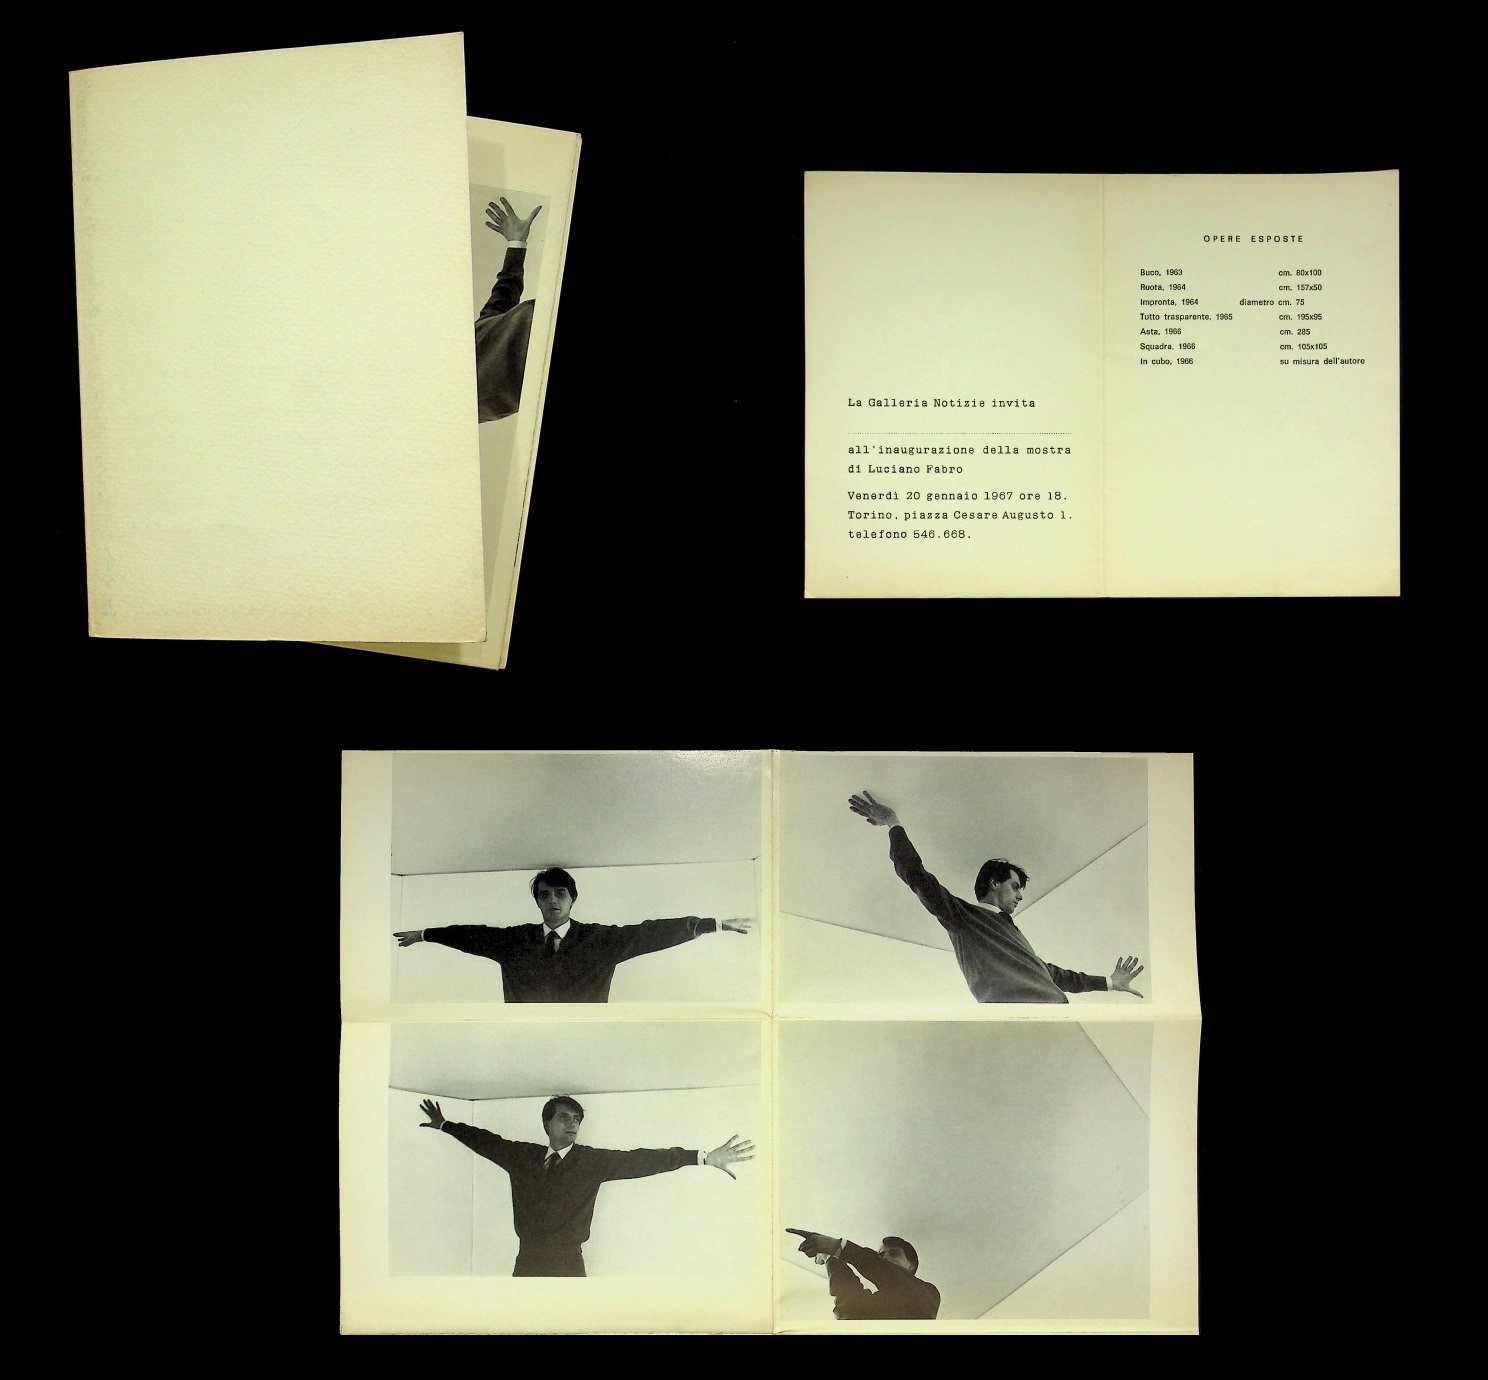 Pieghevole della mostra personale di Luciano Fabro alla Galleria Notizie, Torino, 1967, con visibile In-Cubo, 1966. Courtesy: Archivio Luciano Fabro